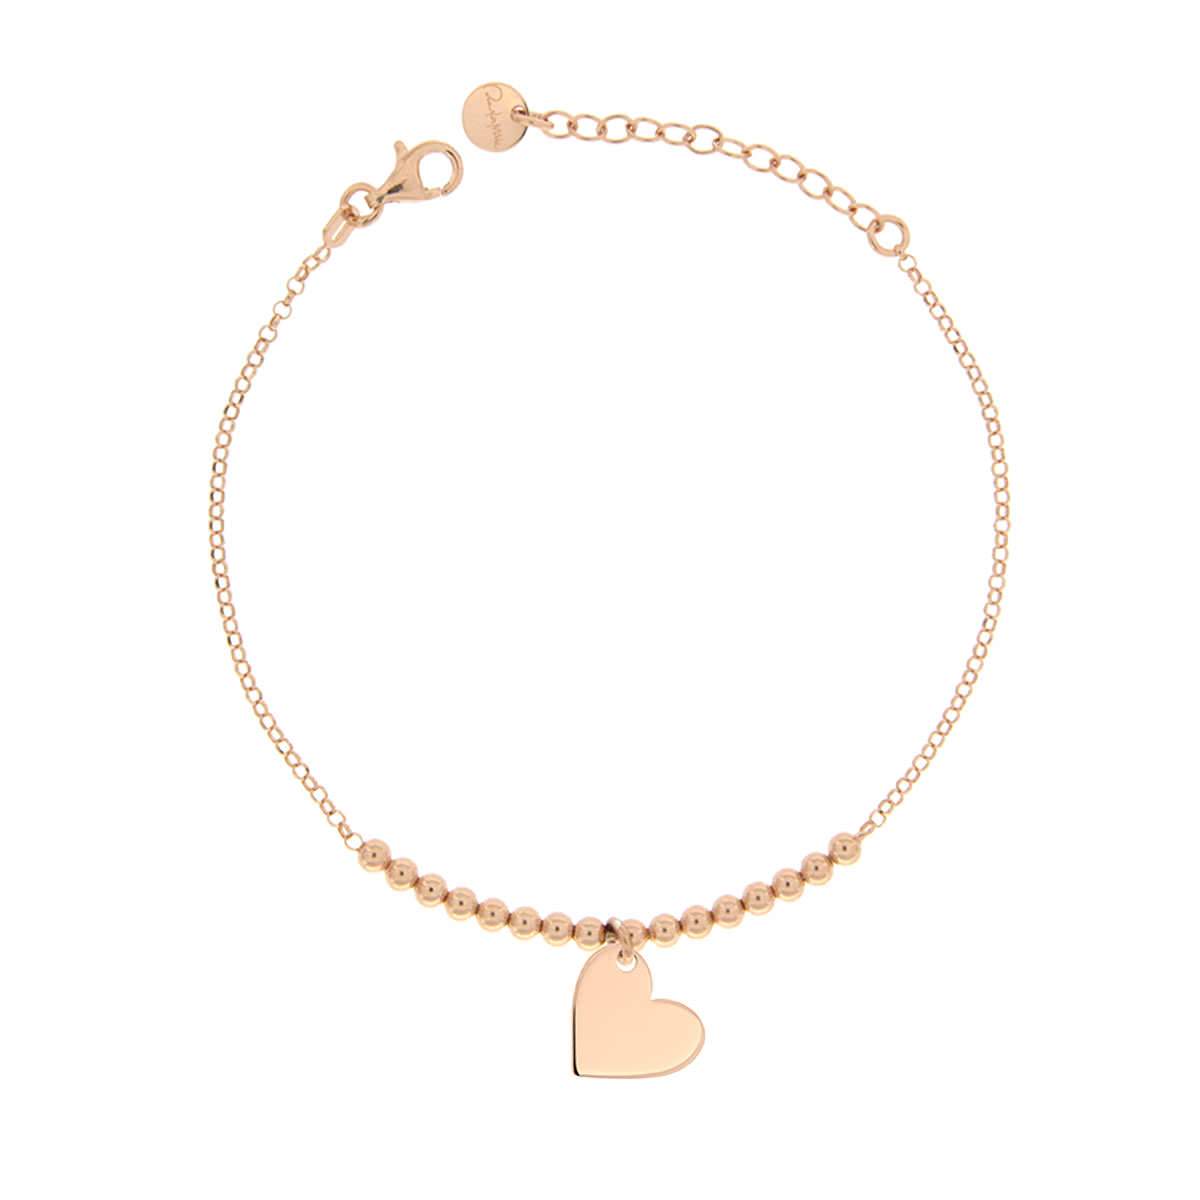 Bracelets - Bracelet Single Subject Heart - 2 | Rue des Mille